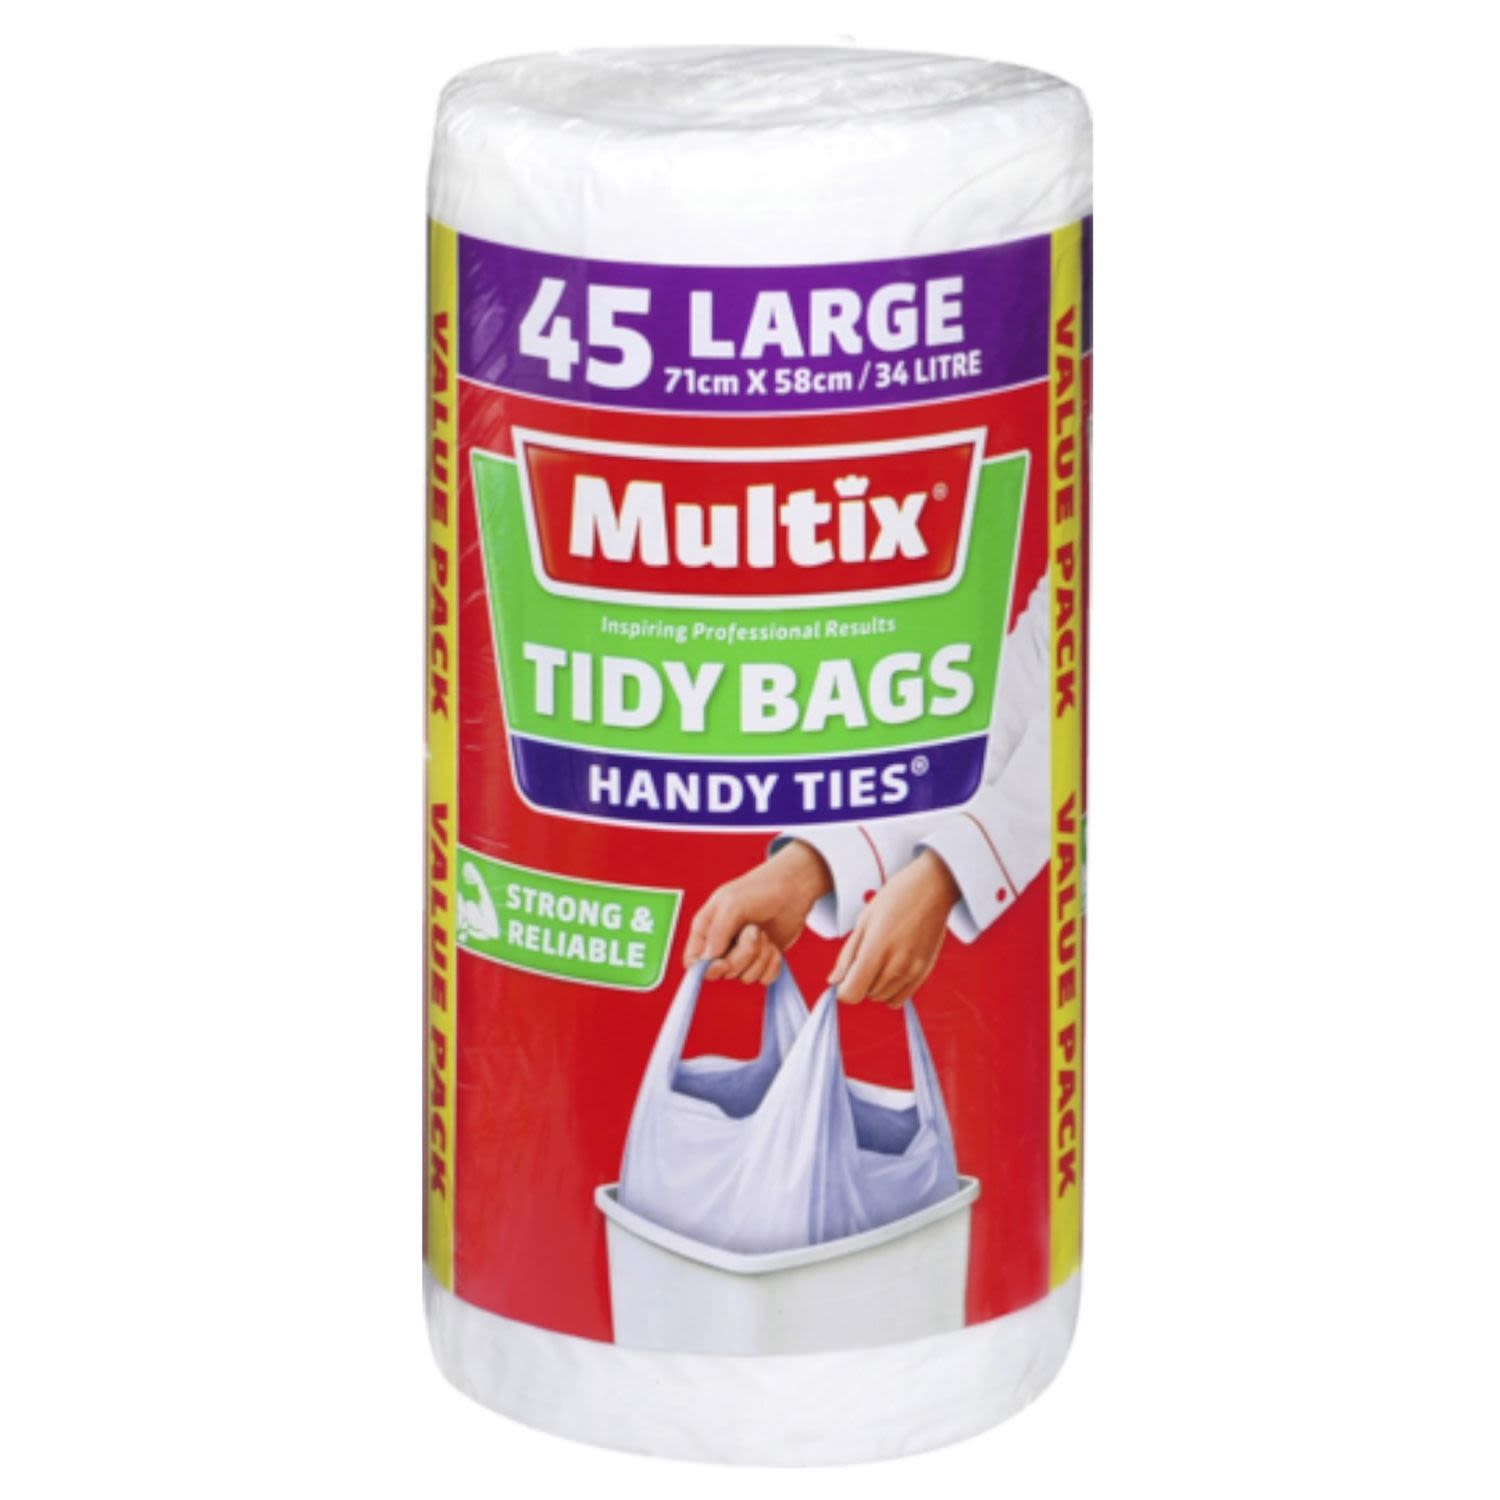 Multix Bag Handy Tie Large, 45 Each